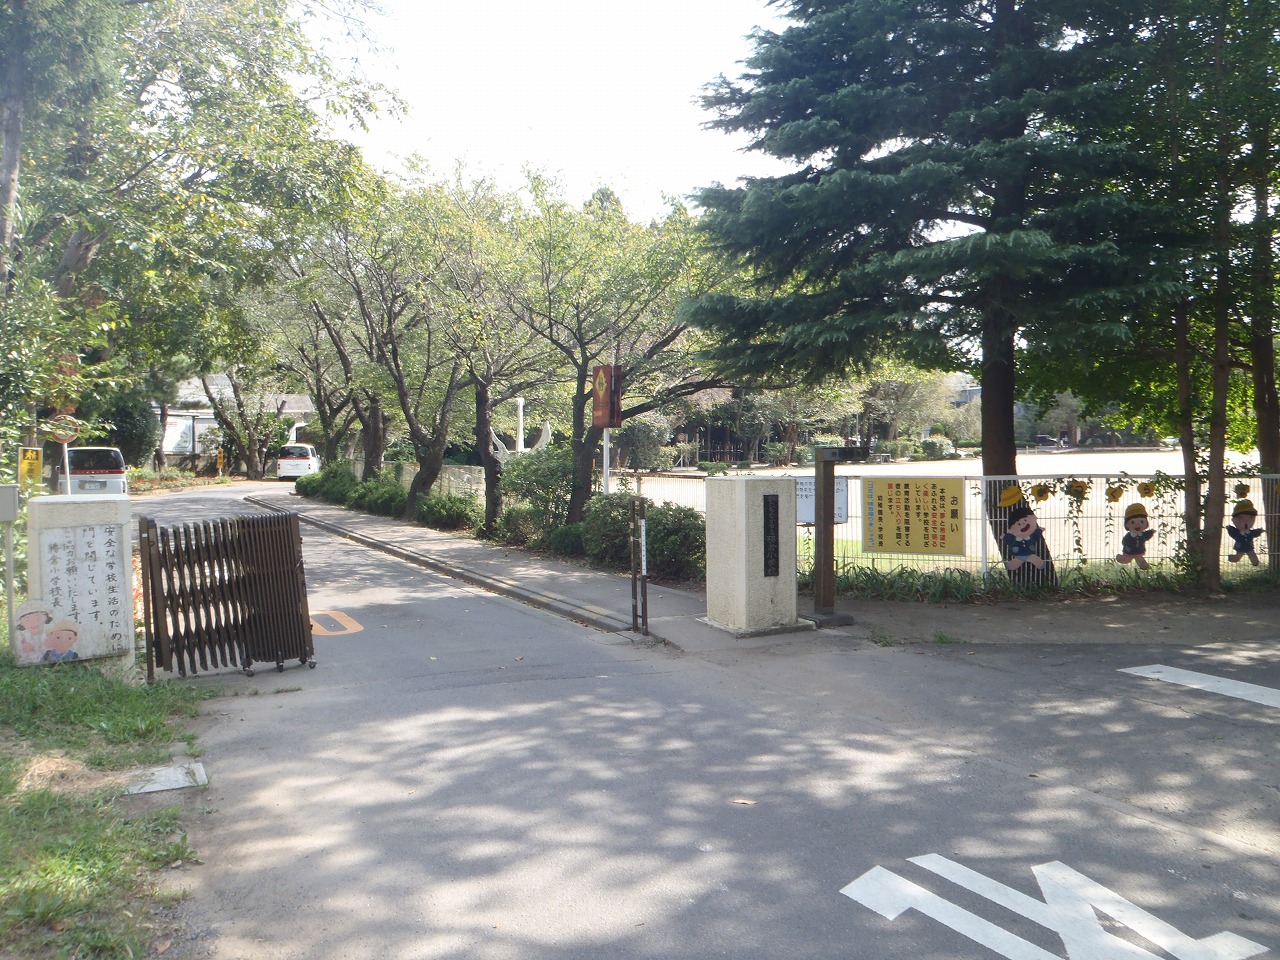 Primary school. 1300m to Hitachinaka Municipal Katsukura elementary school (elementary school)